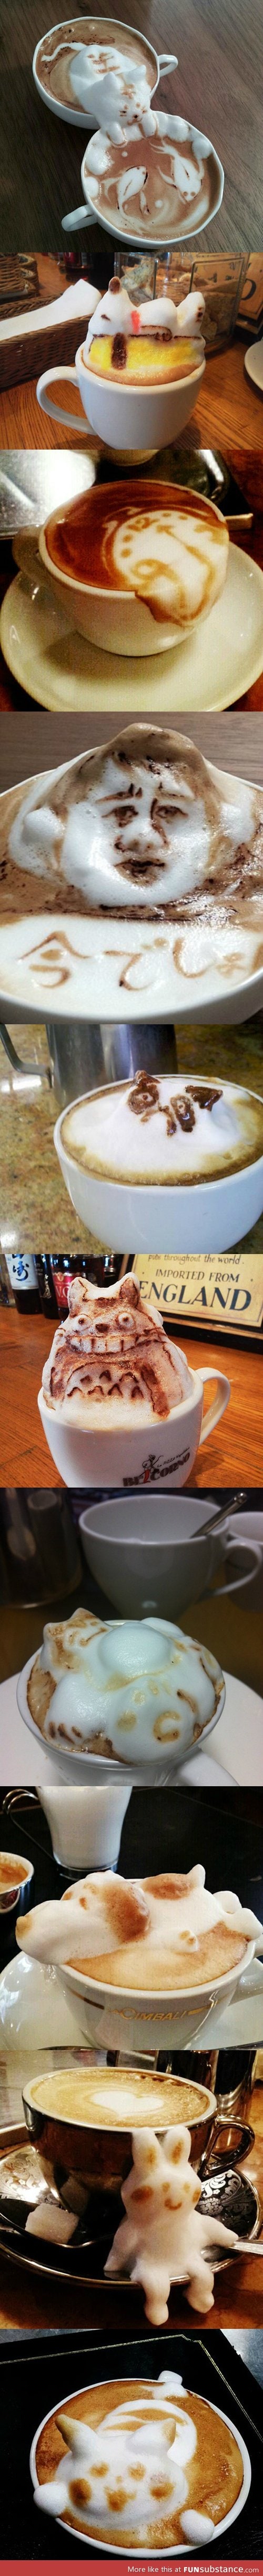 Amazing latte art pictures